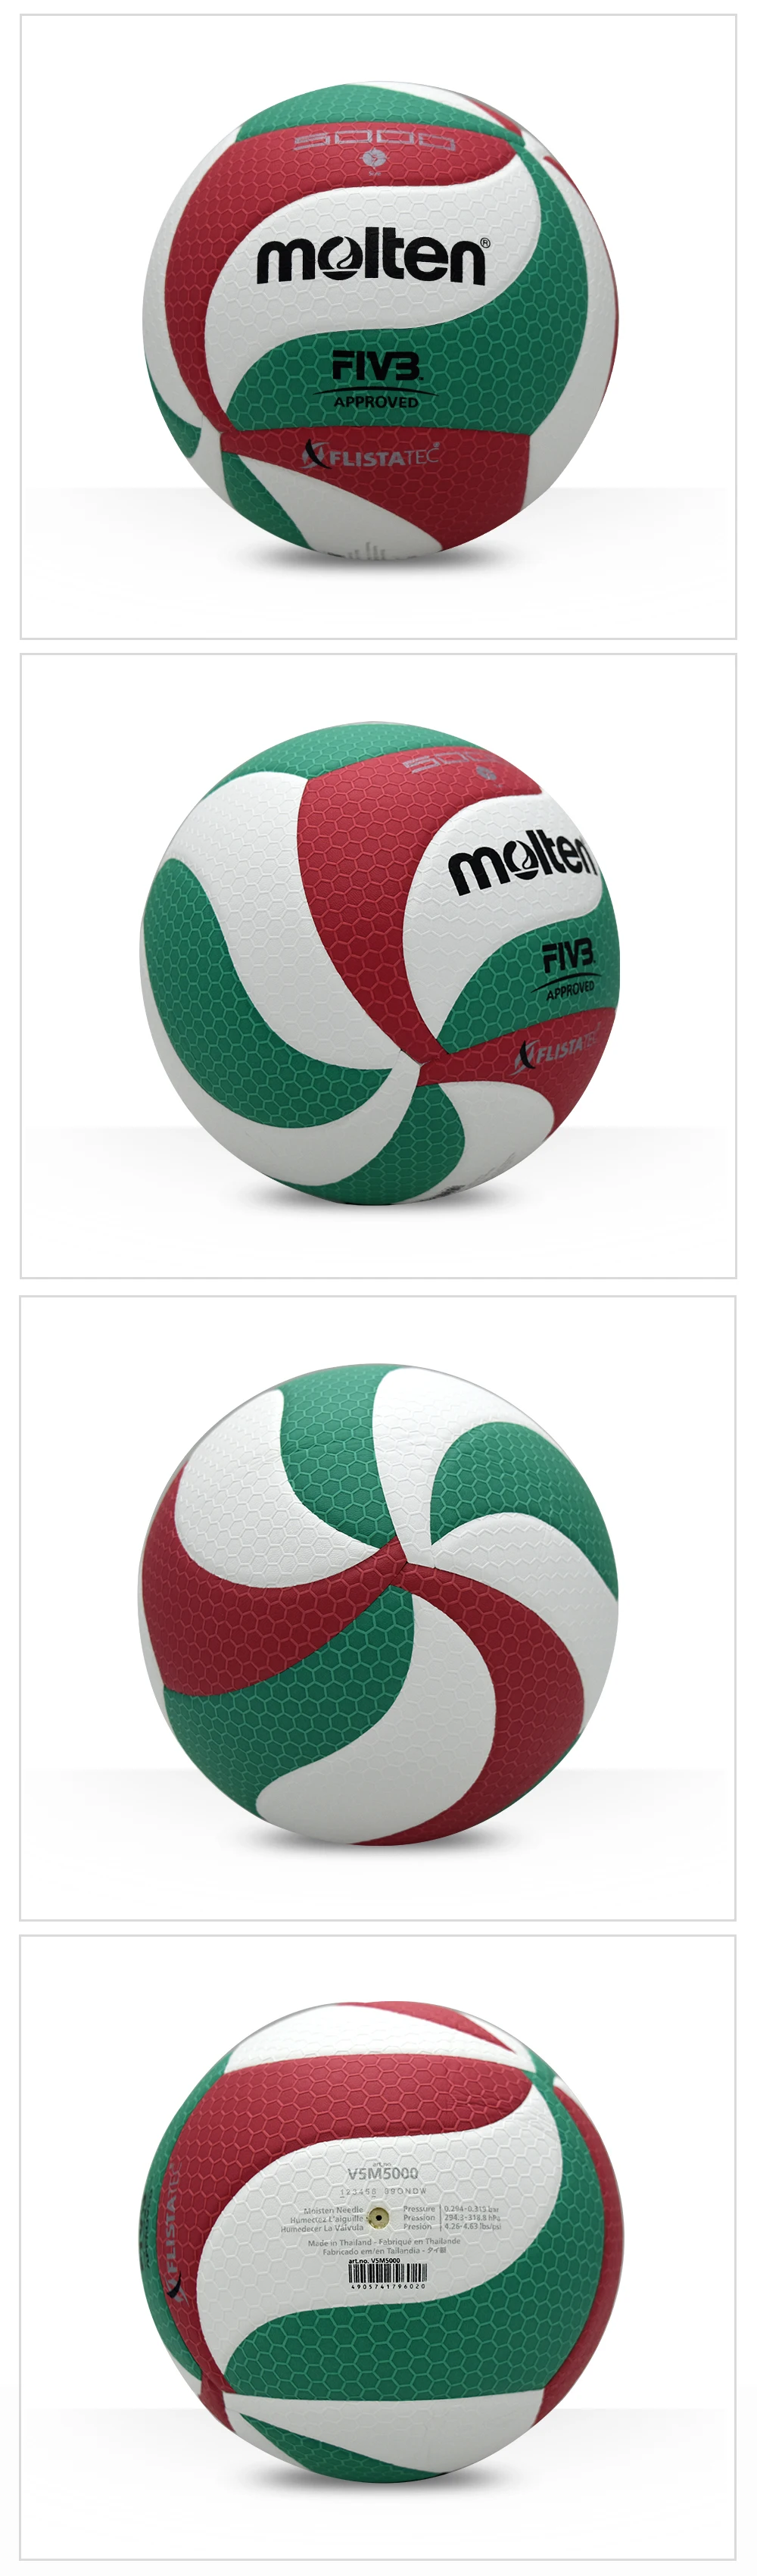 Оригинальный Волейбольный мяч V5M5000 новый бренд высокое качество натуральной расплавленный PU Материал официальный Размеры 5 Бесплатная с